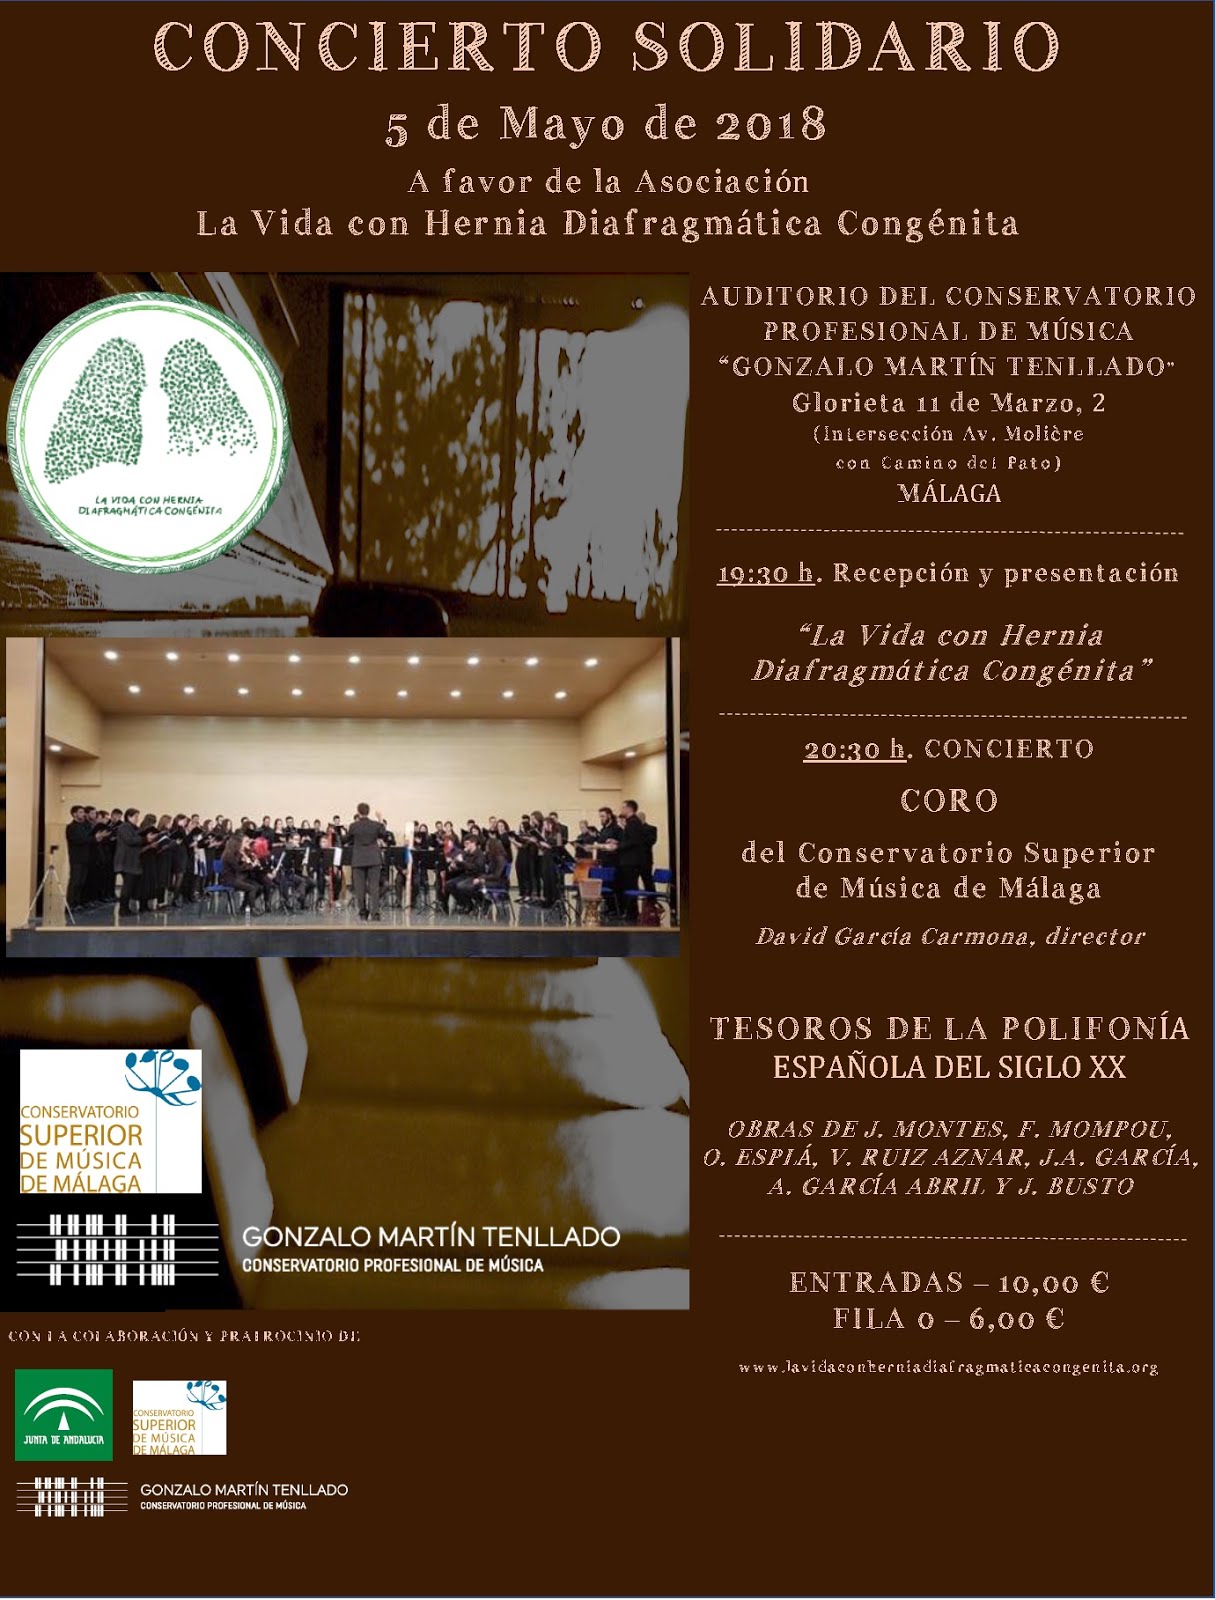 Coro CSMMA. Concierto Solidario.05-05-2018